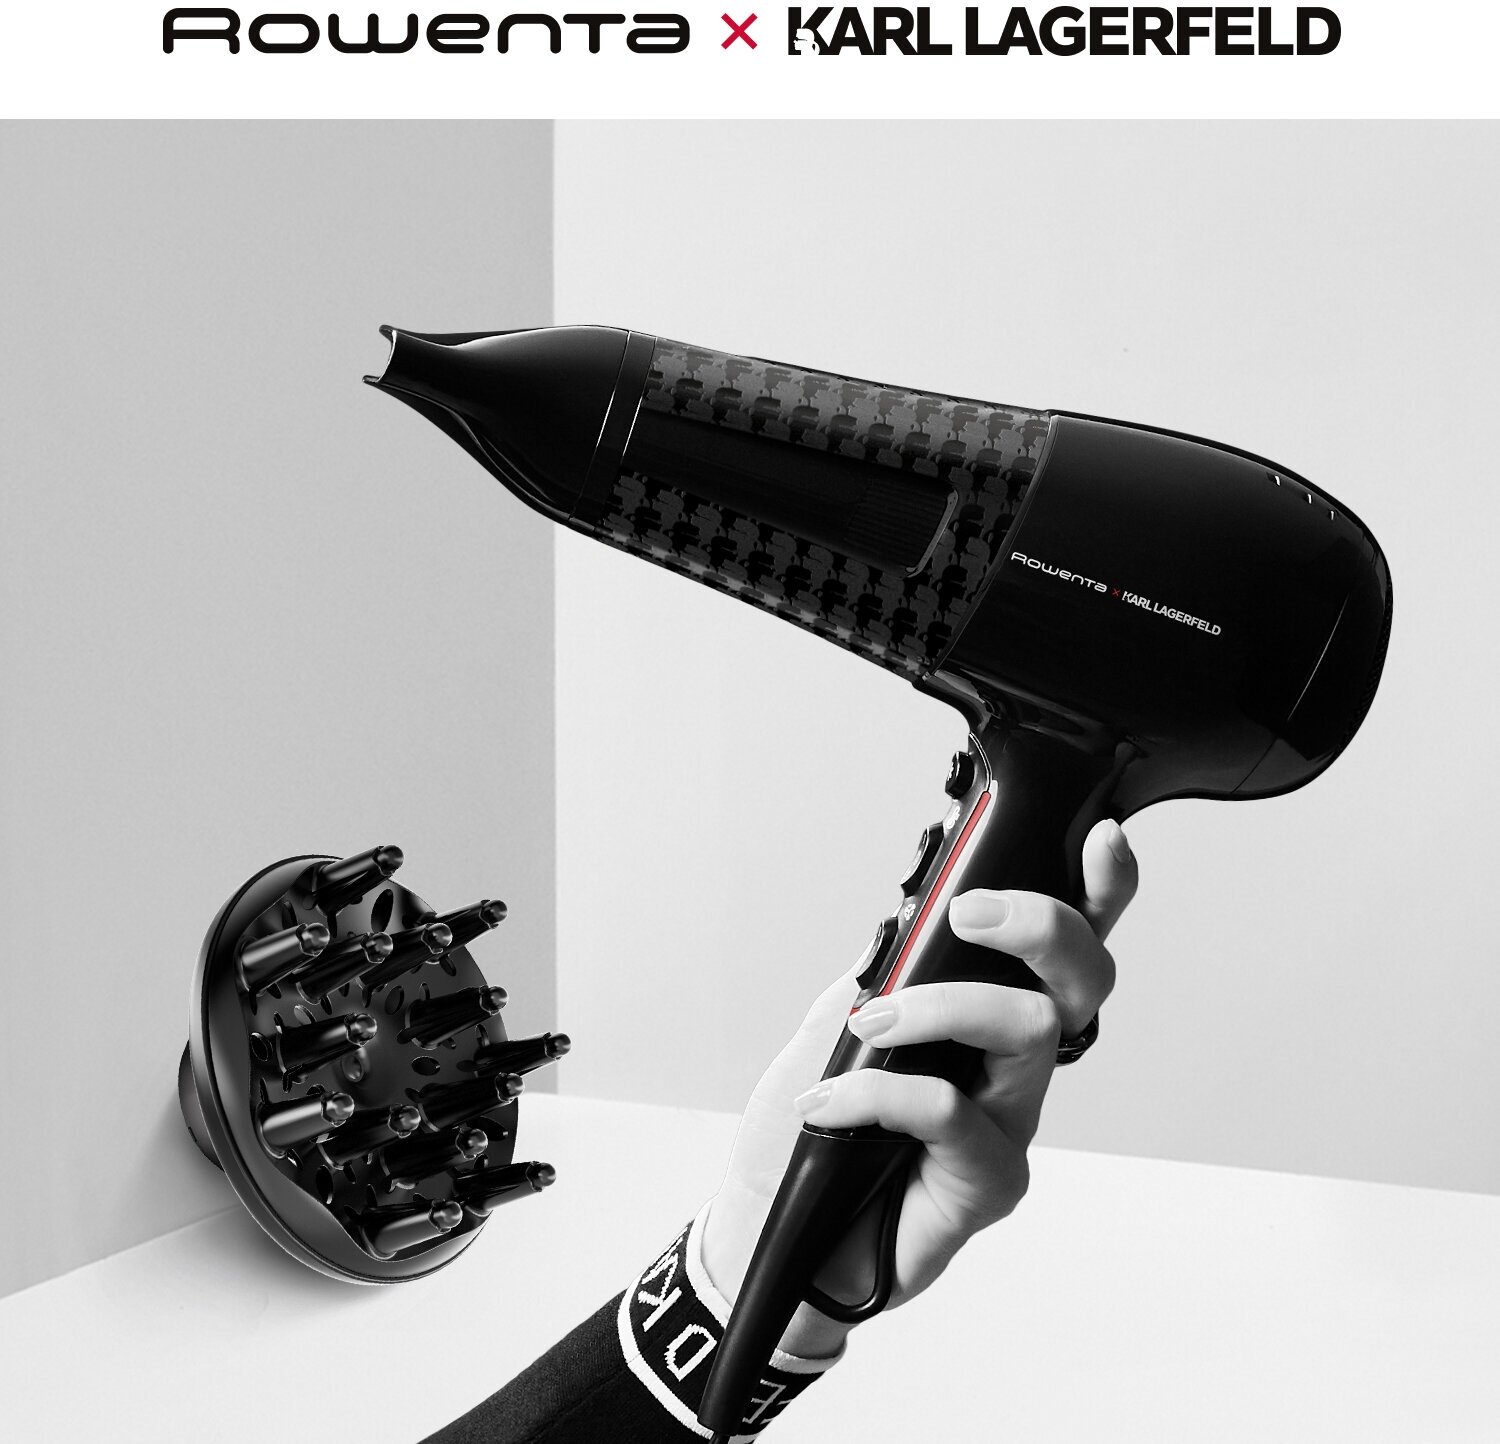 Фен для волос Rowenta Karl Lagerfeld CV591LF0 карл лагерфельд, 2 скорости, ионный генератор, 2100 Вт